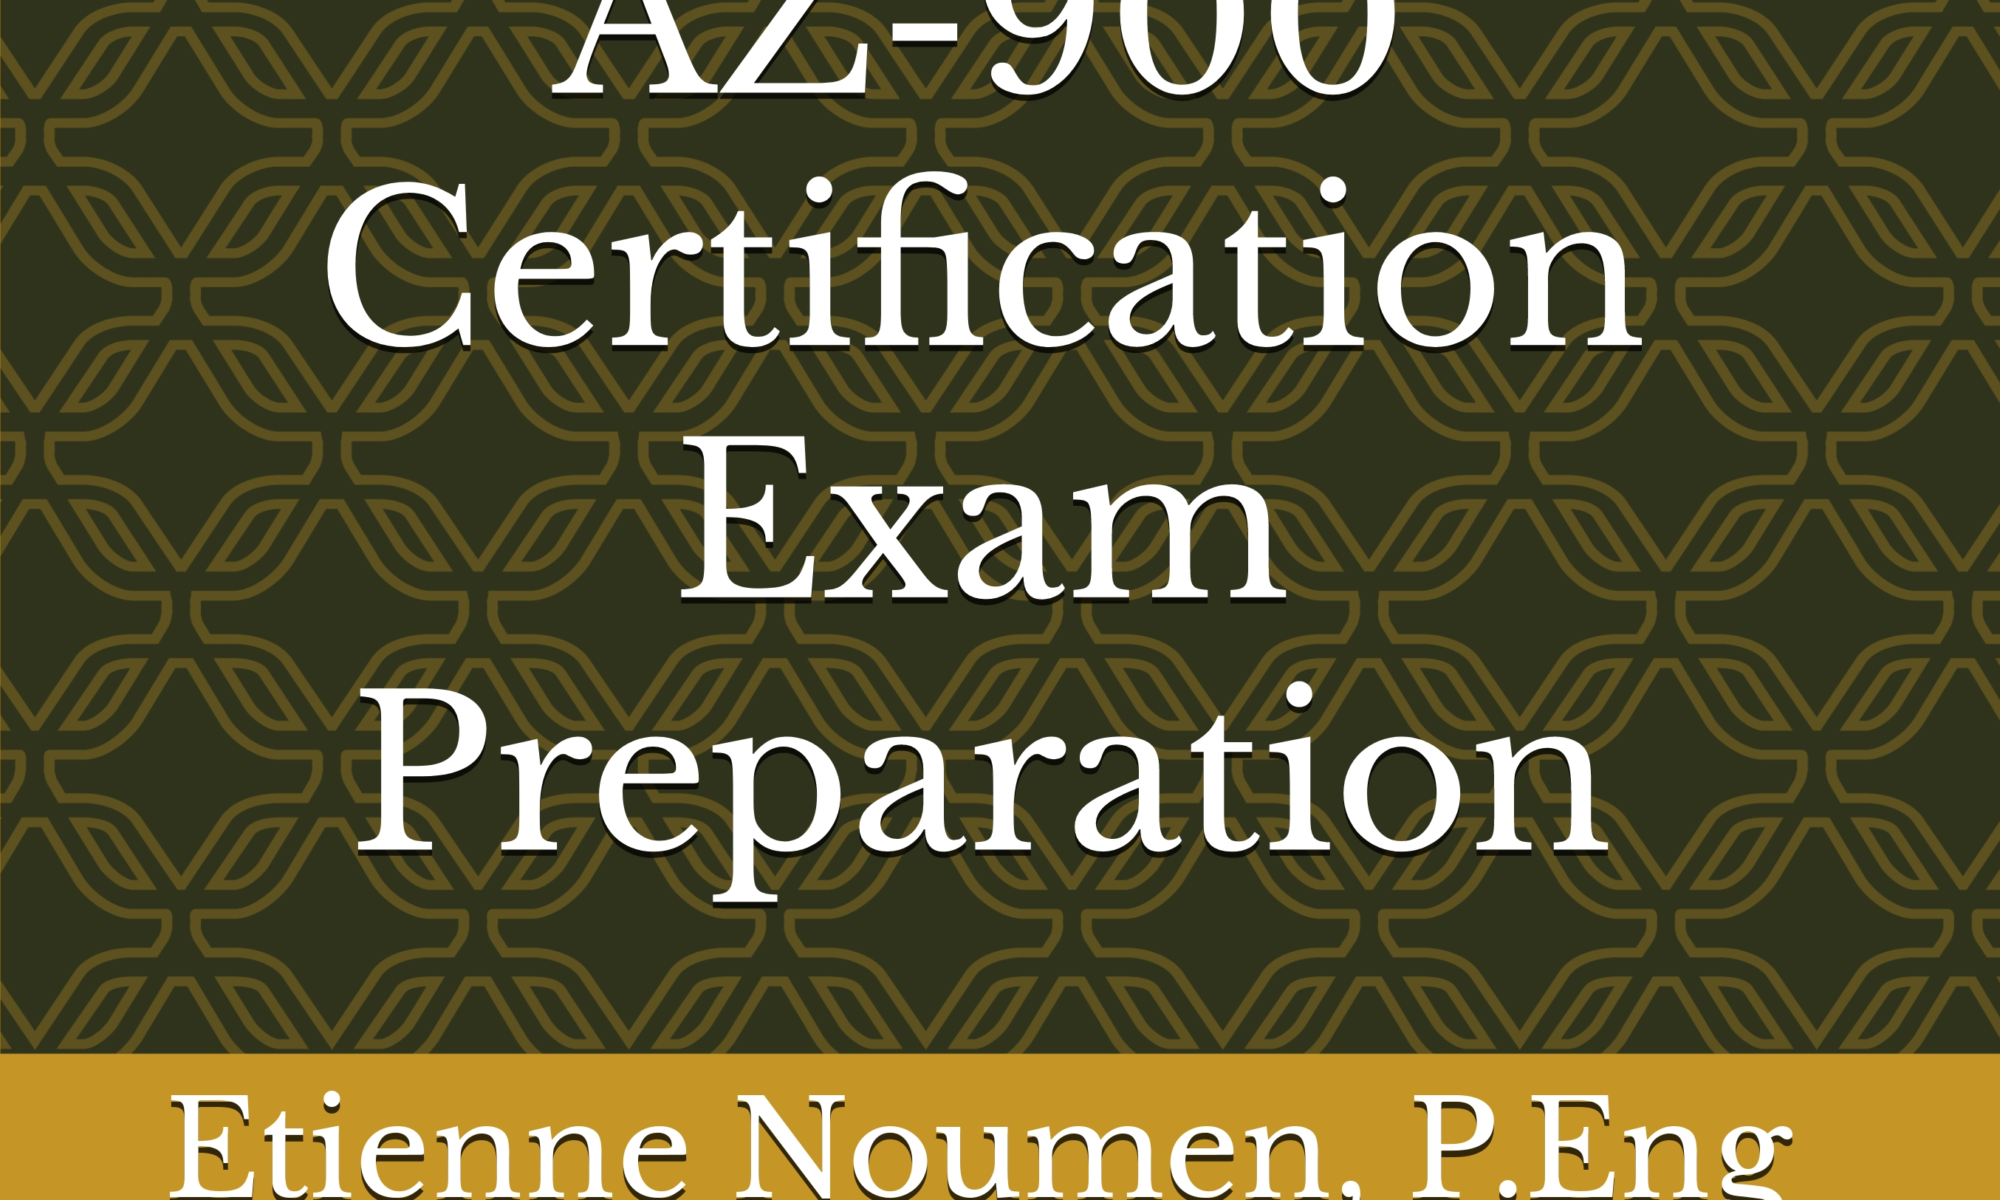 2022 Azure Fundamentals AZ900 Exam Preparation